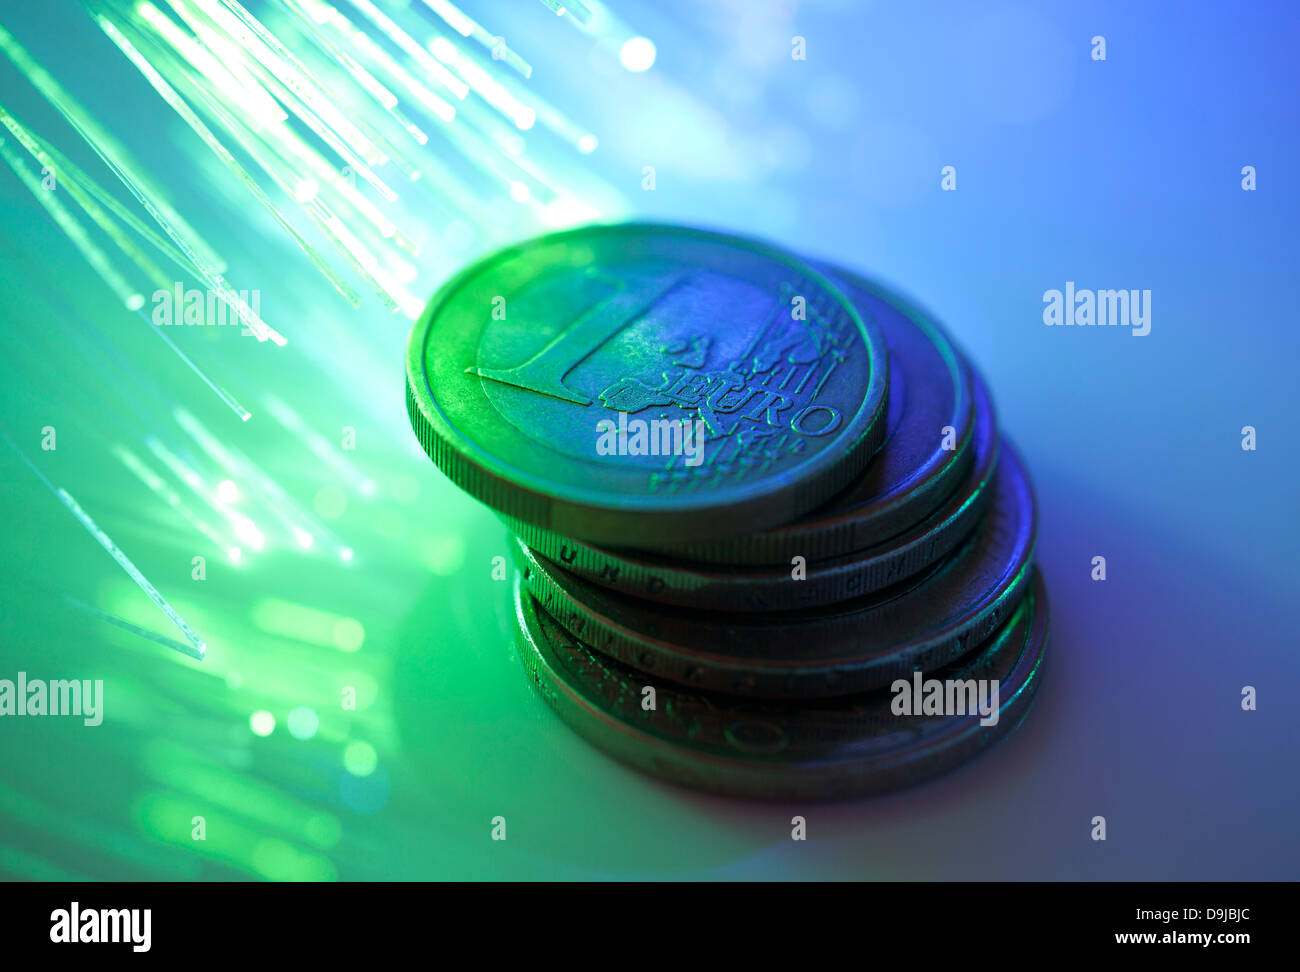 Euro coins on fiber optics background Stock Photo